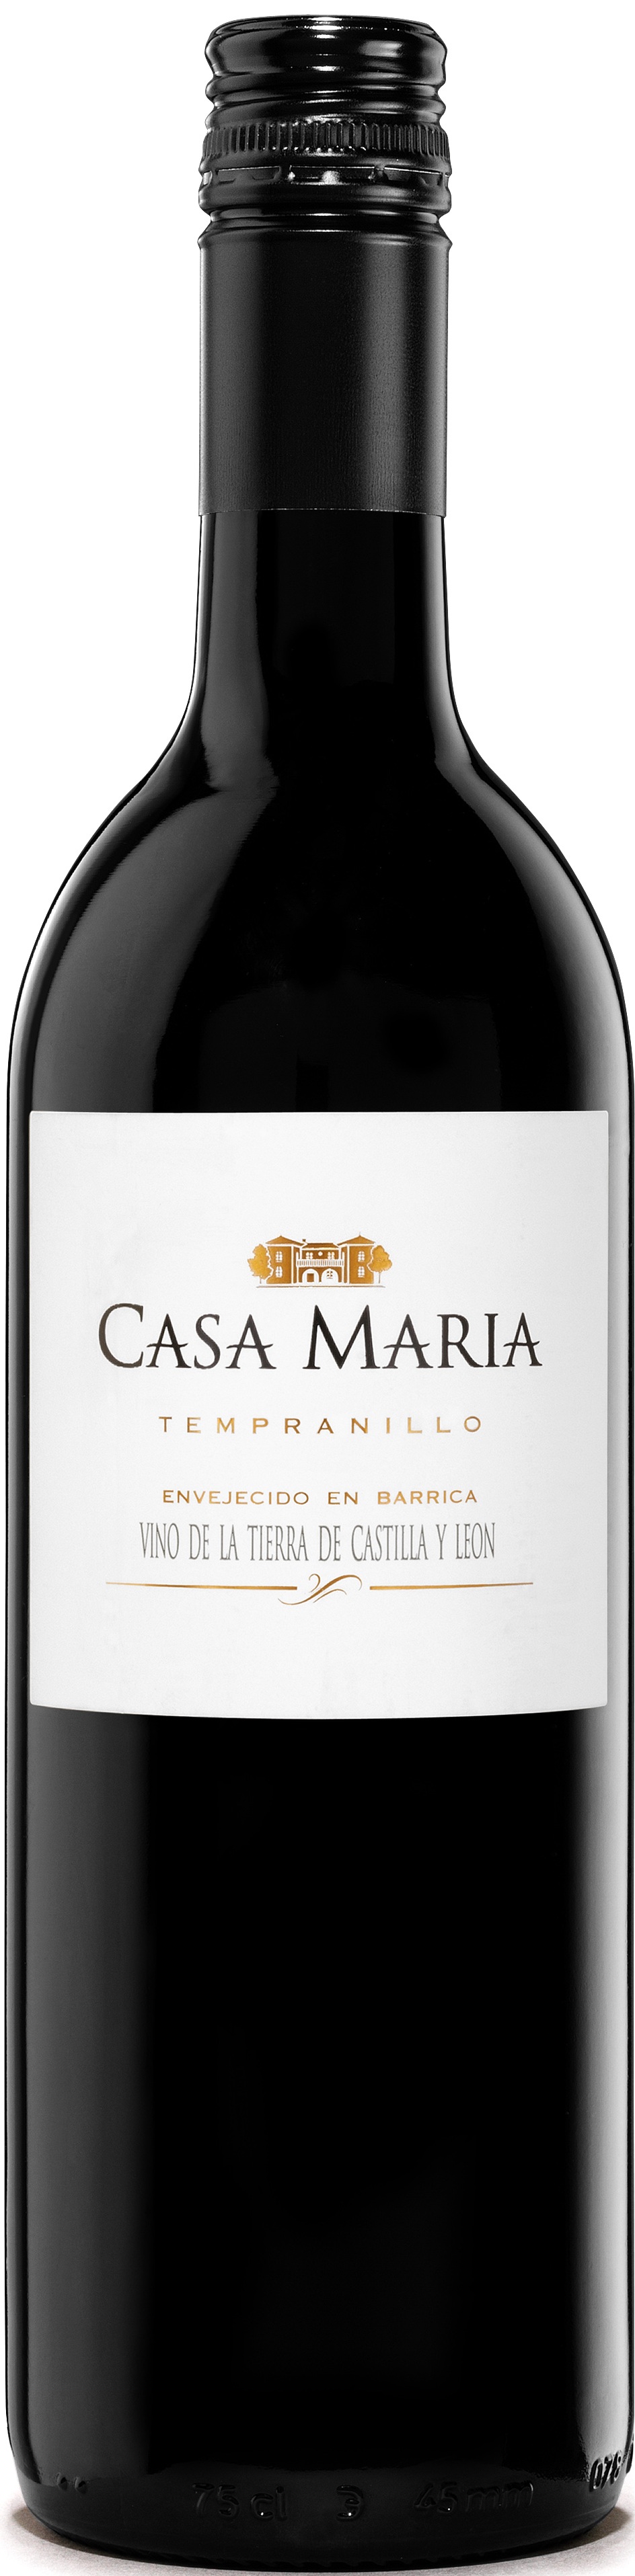 Bild von der Weinflasche Casa María Roble